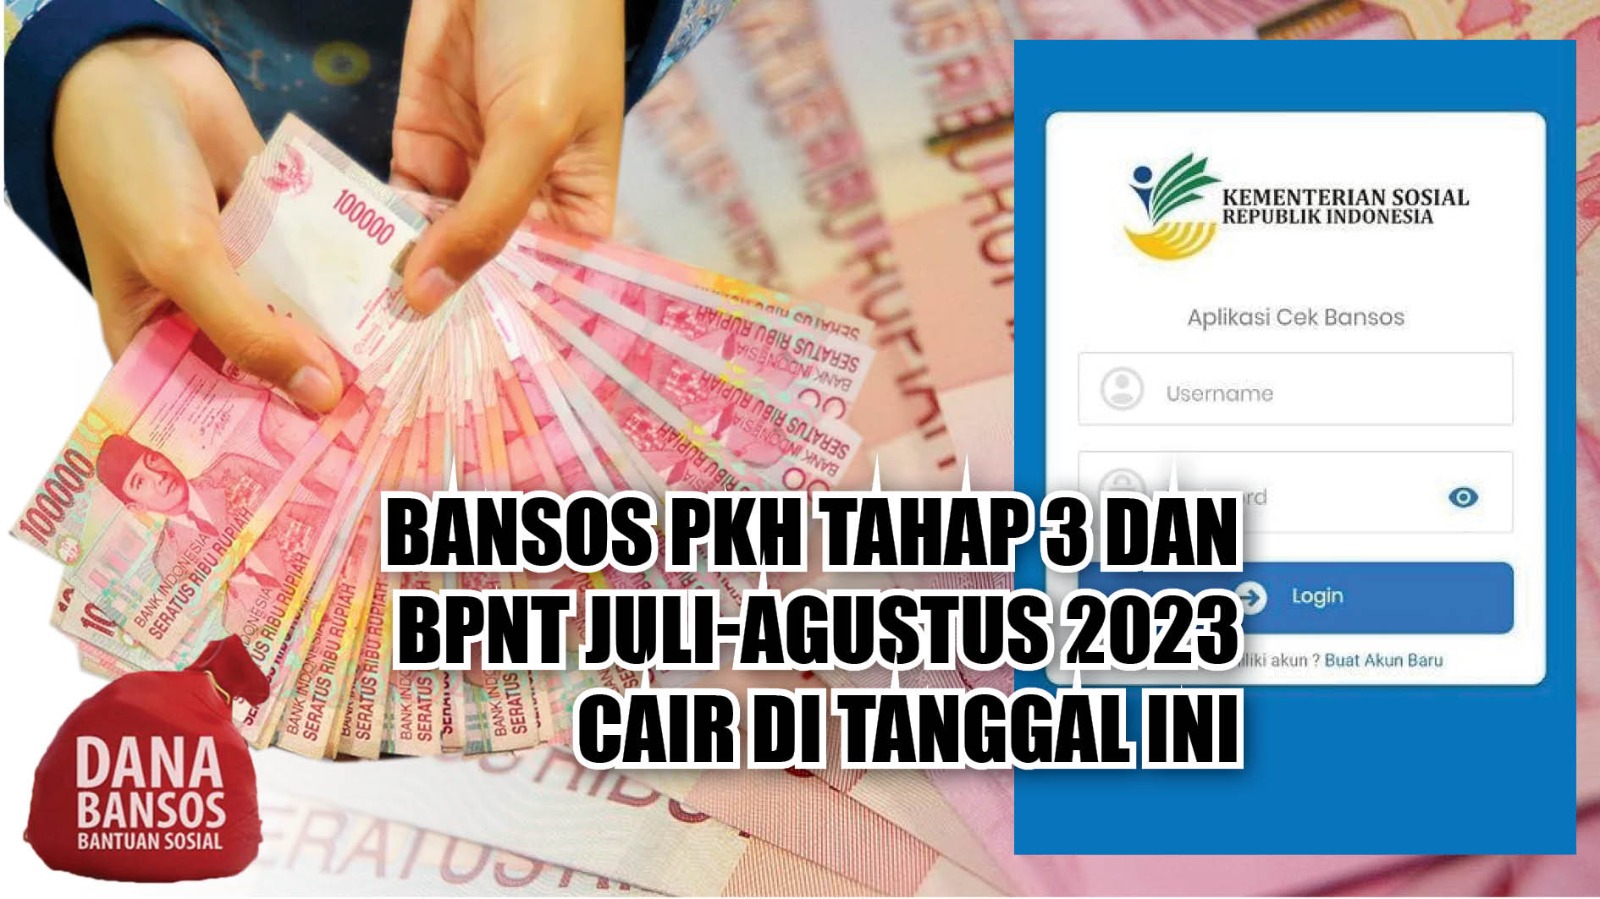 KPM Segera Cek, Bansos PKH Tahap 3 dan BPNT Juli-Agustus 2023 Cair di Tanggal Ini